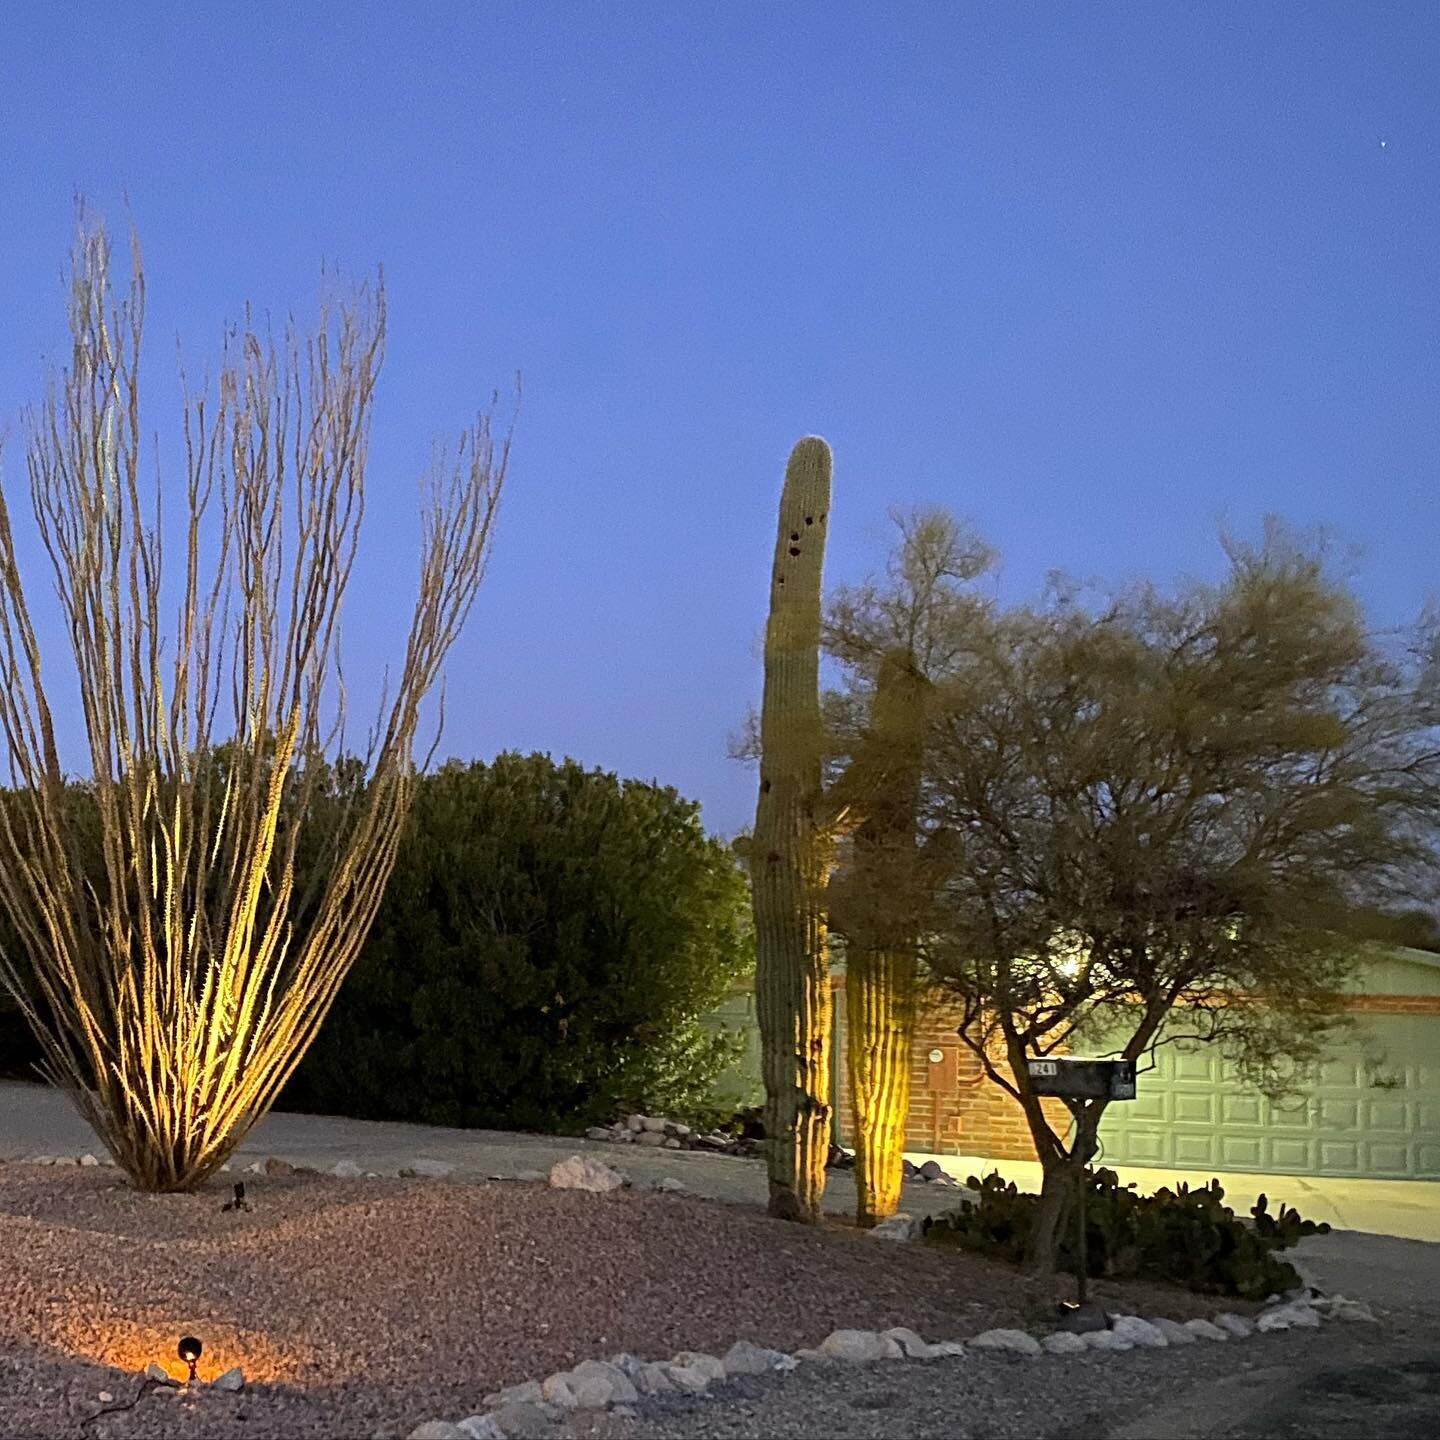 Tucson at dusk #tucsongemshow #tucson